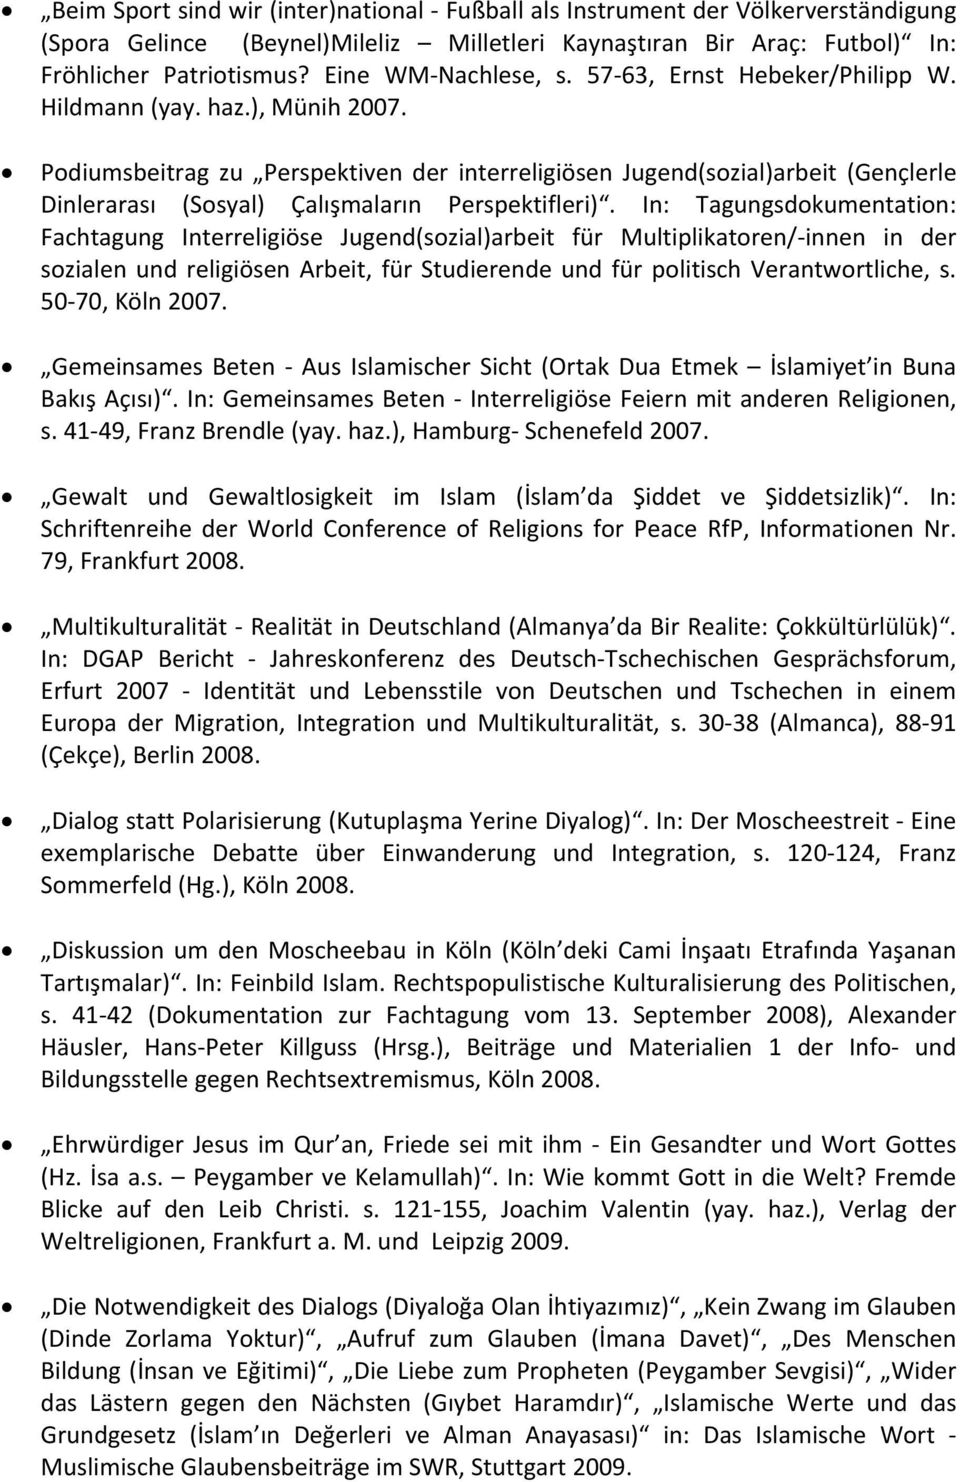 Podiumsbeitrag zu Perspektiven der interreligiösen Jugend(sozial)arbeit (Gençlerle Dinlerarası (Sosyal) Çalışmaların Perspektifleri).